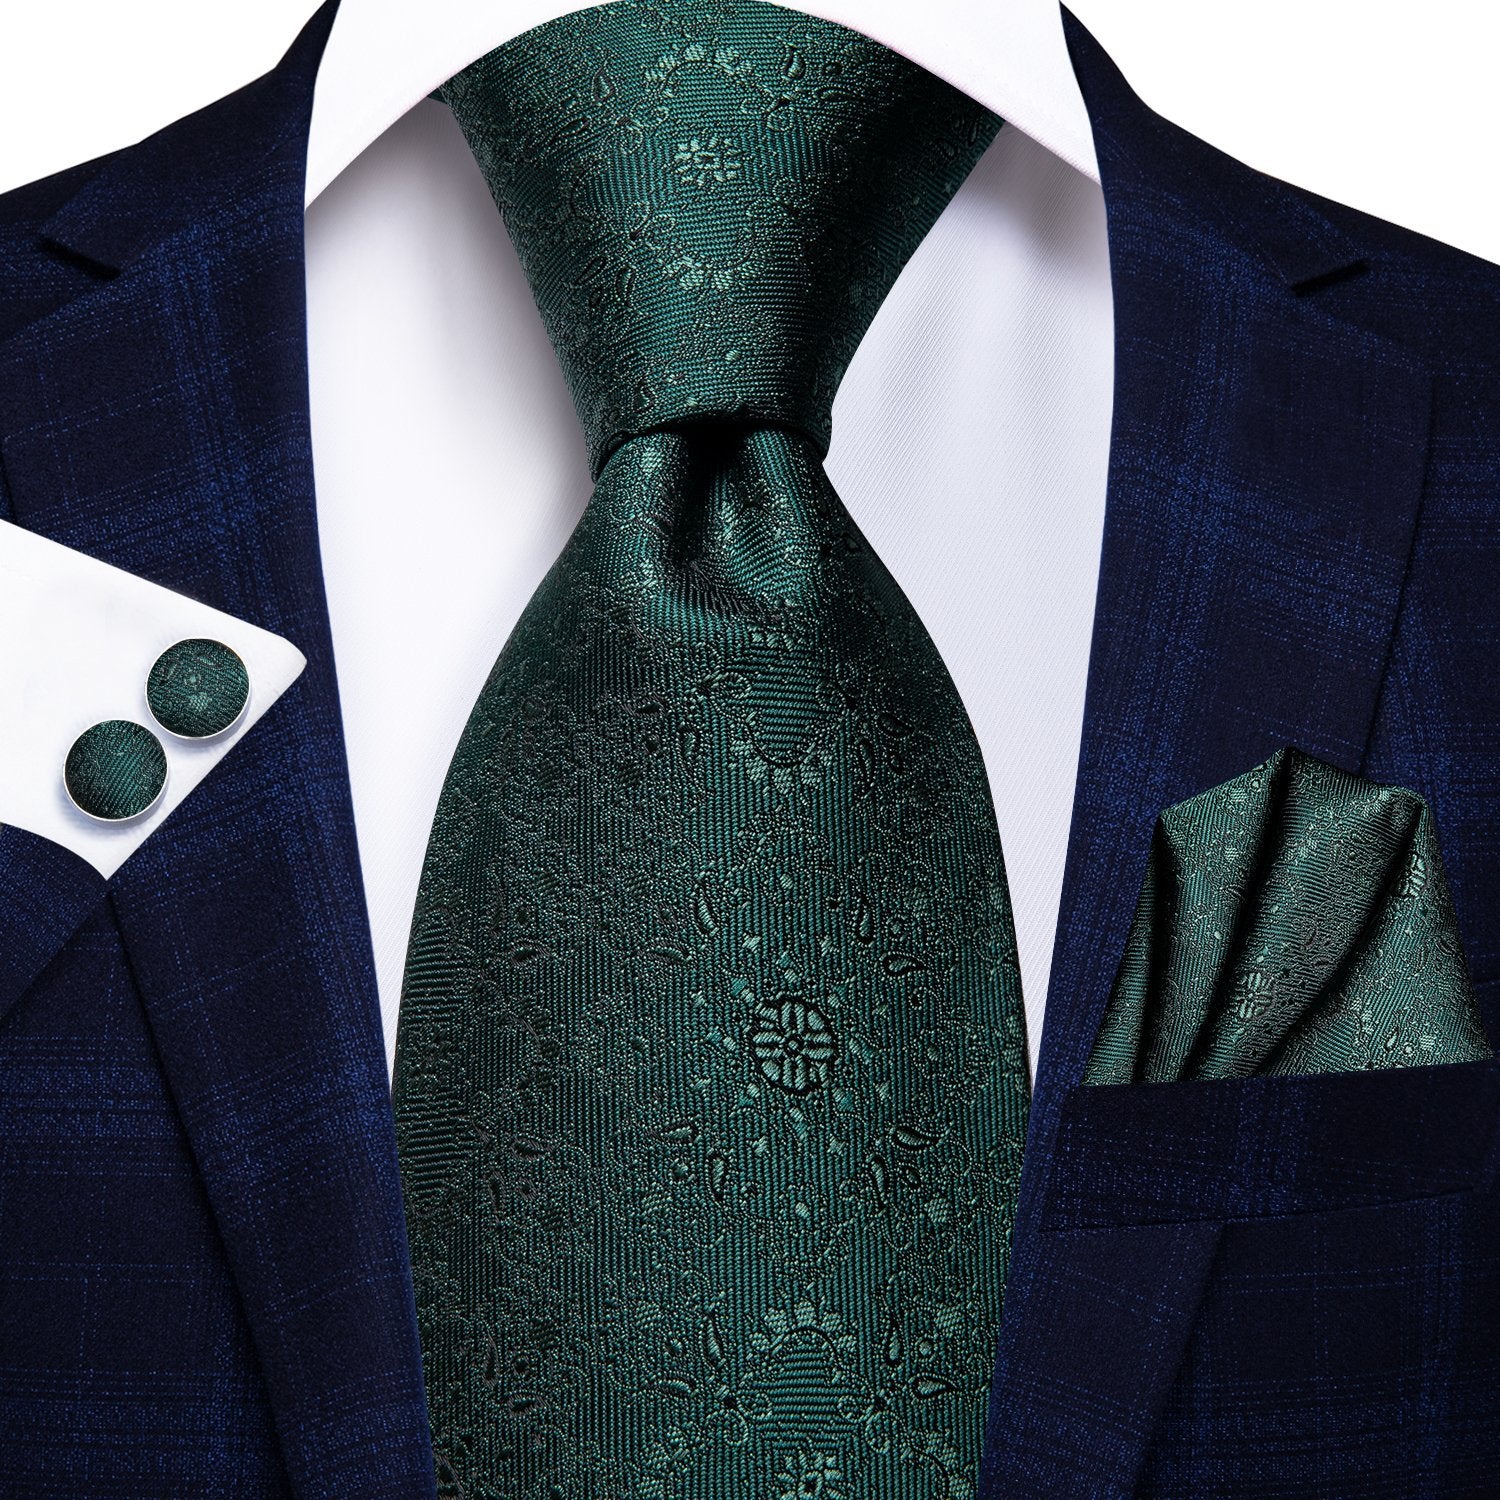 Dark Green Floral Tie Handkerchief Cufflinks Set with Wedding Brooch